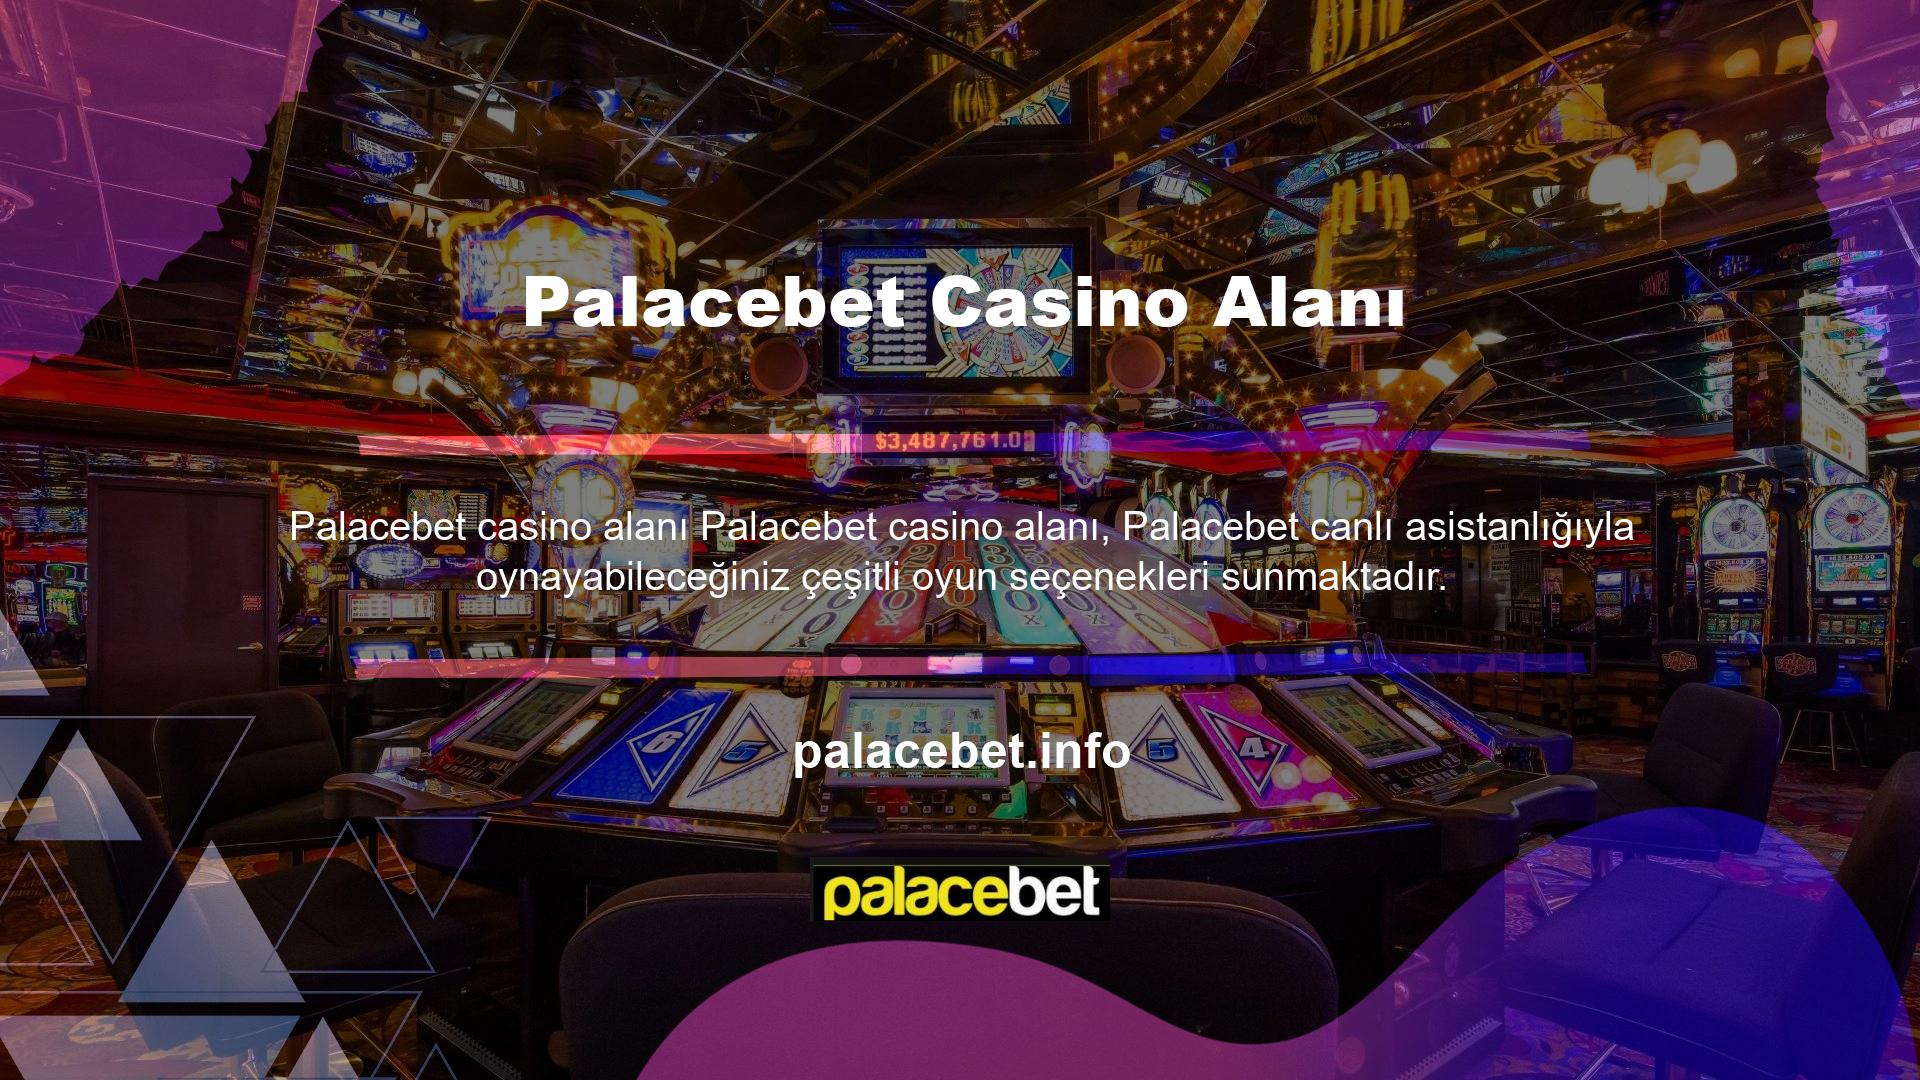 Bu platform, gerçek casinoları, özellikle de bu kuruluşlardaki canlı casinoyu kullanarak otantik bir casino deneyimi sunmayı amaçlamaktadır